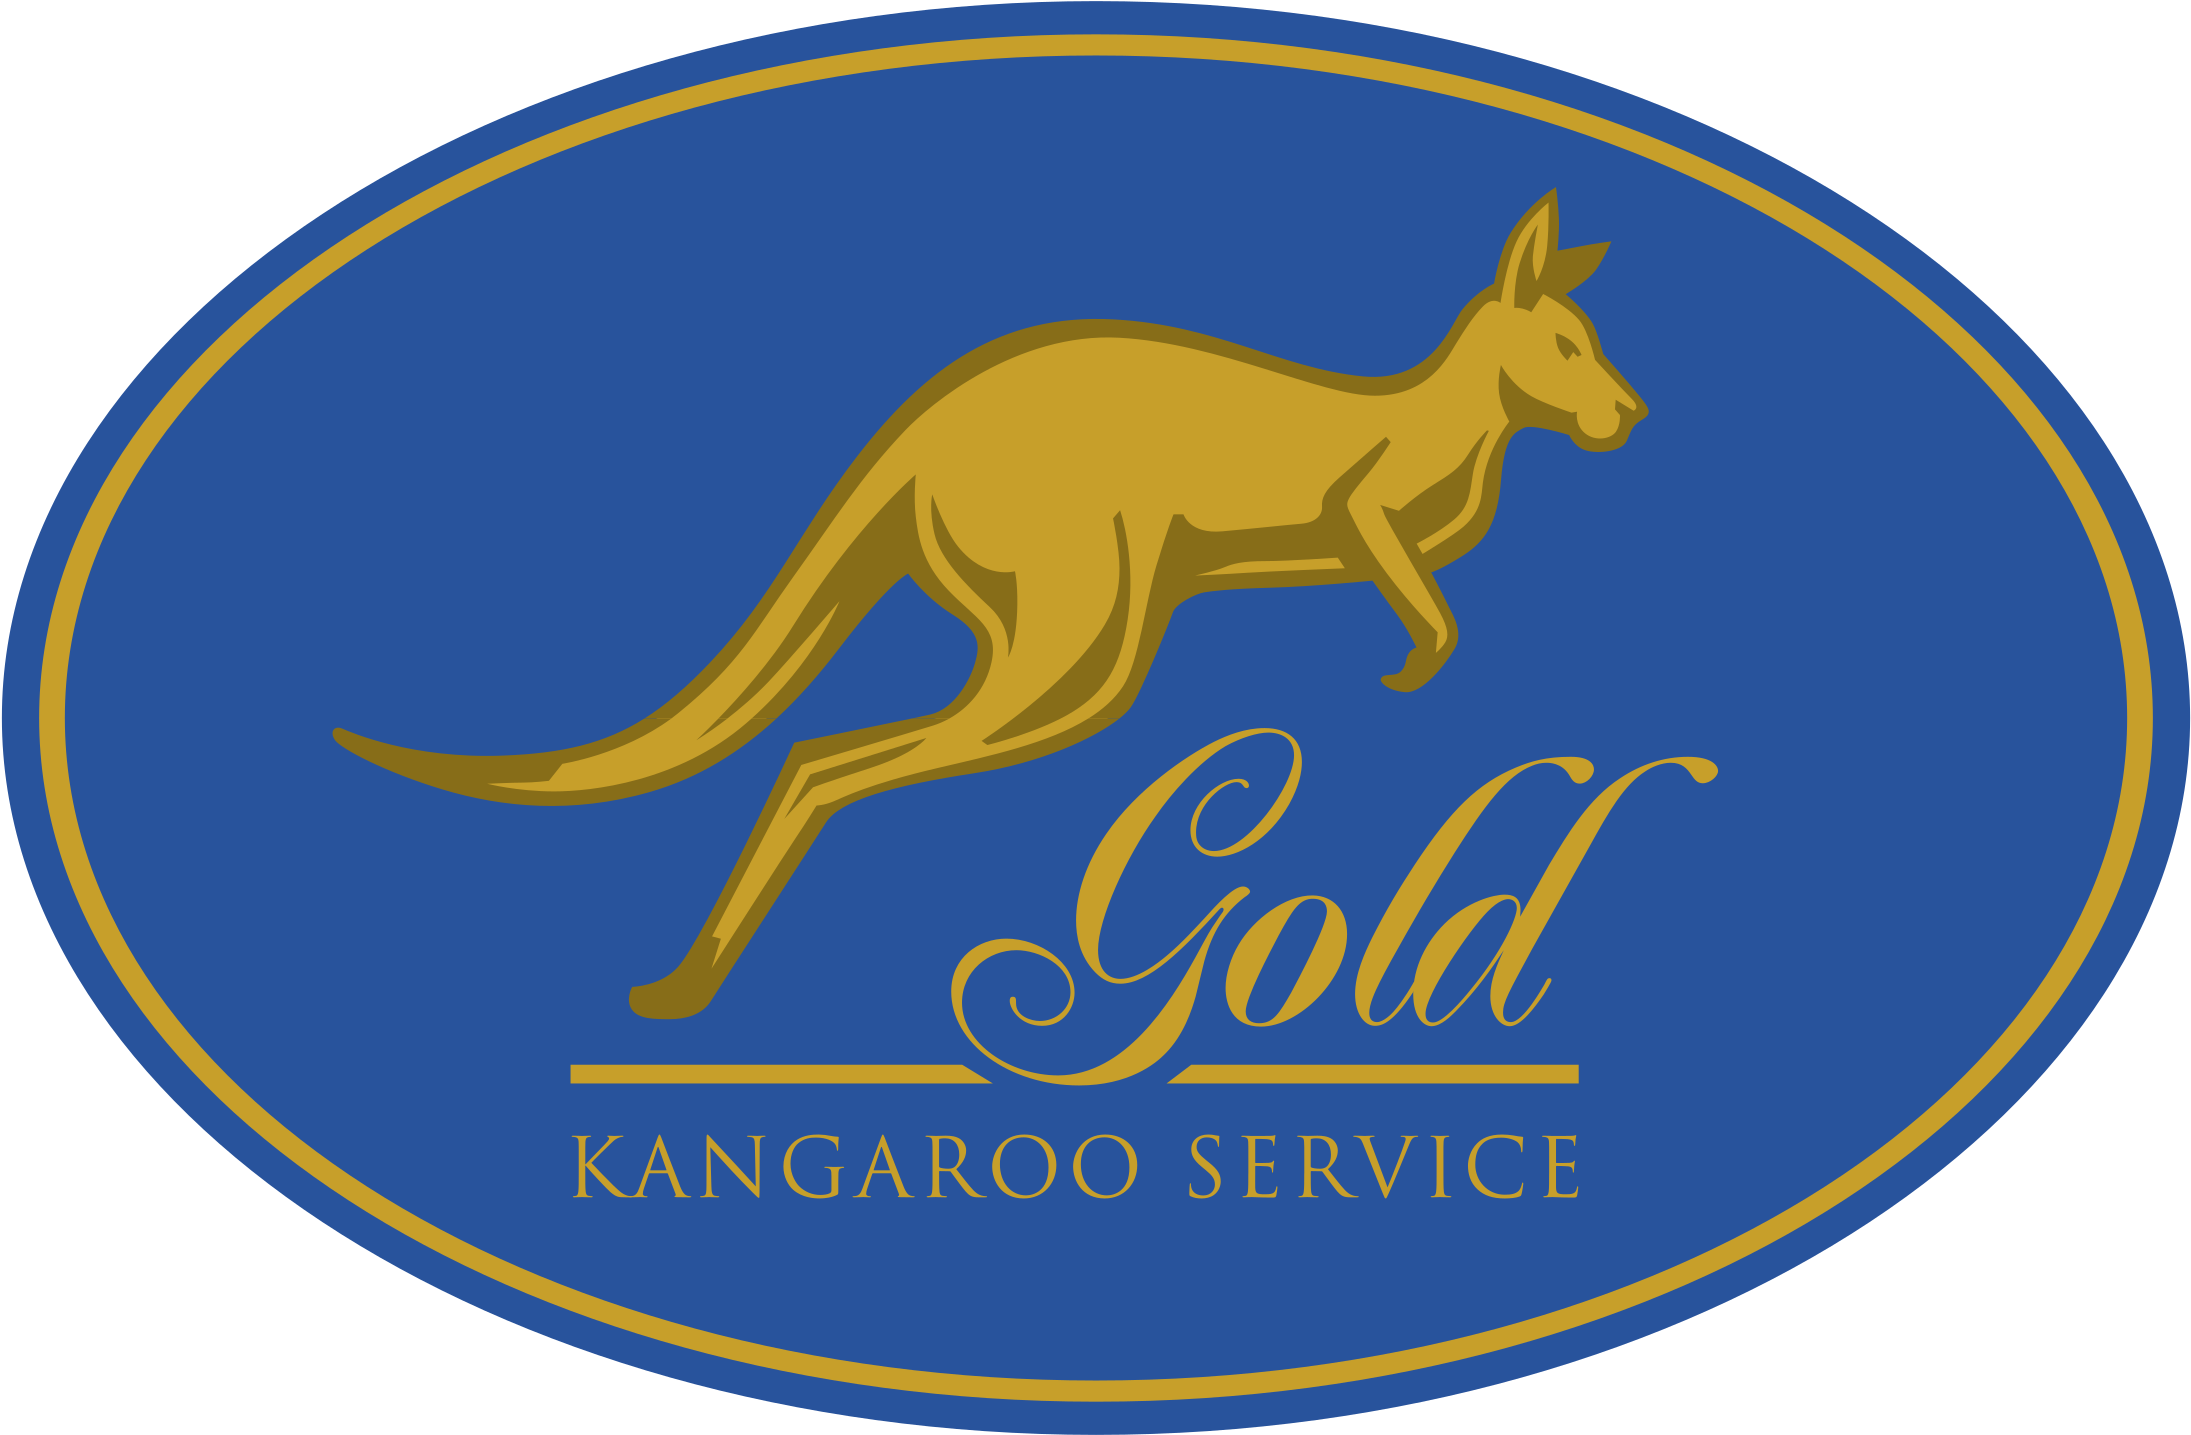 Логотип кенгуру. Кенгуру логотип. Кенгуру на эмблеме логотипа. Логотип Канцгуру. Кенгуру магазин логотип.